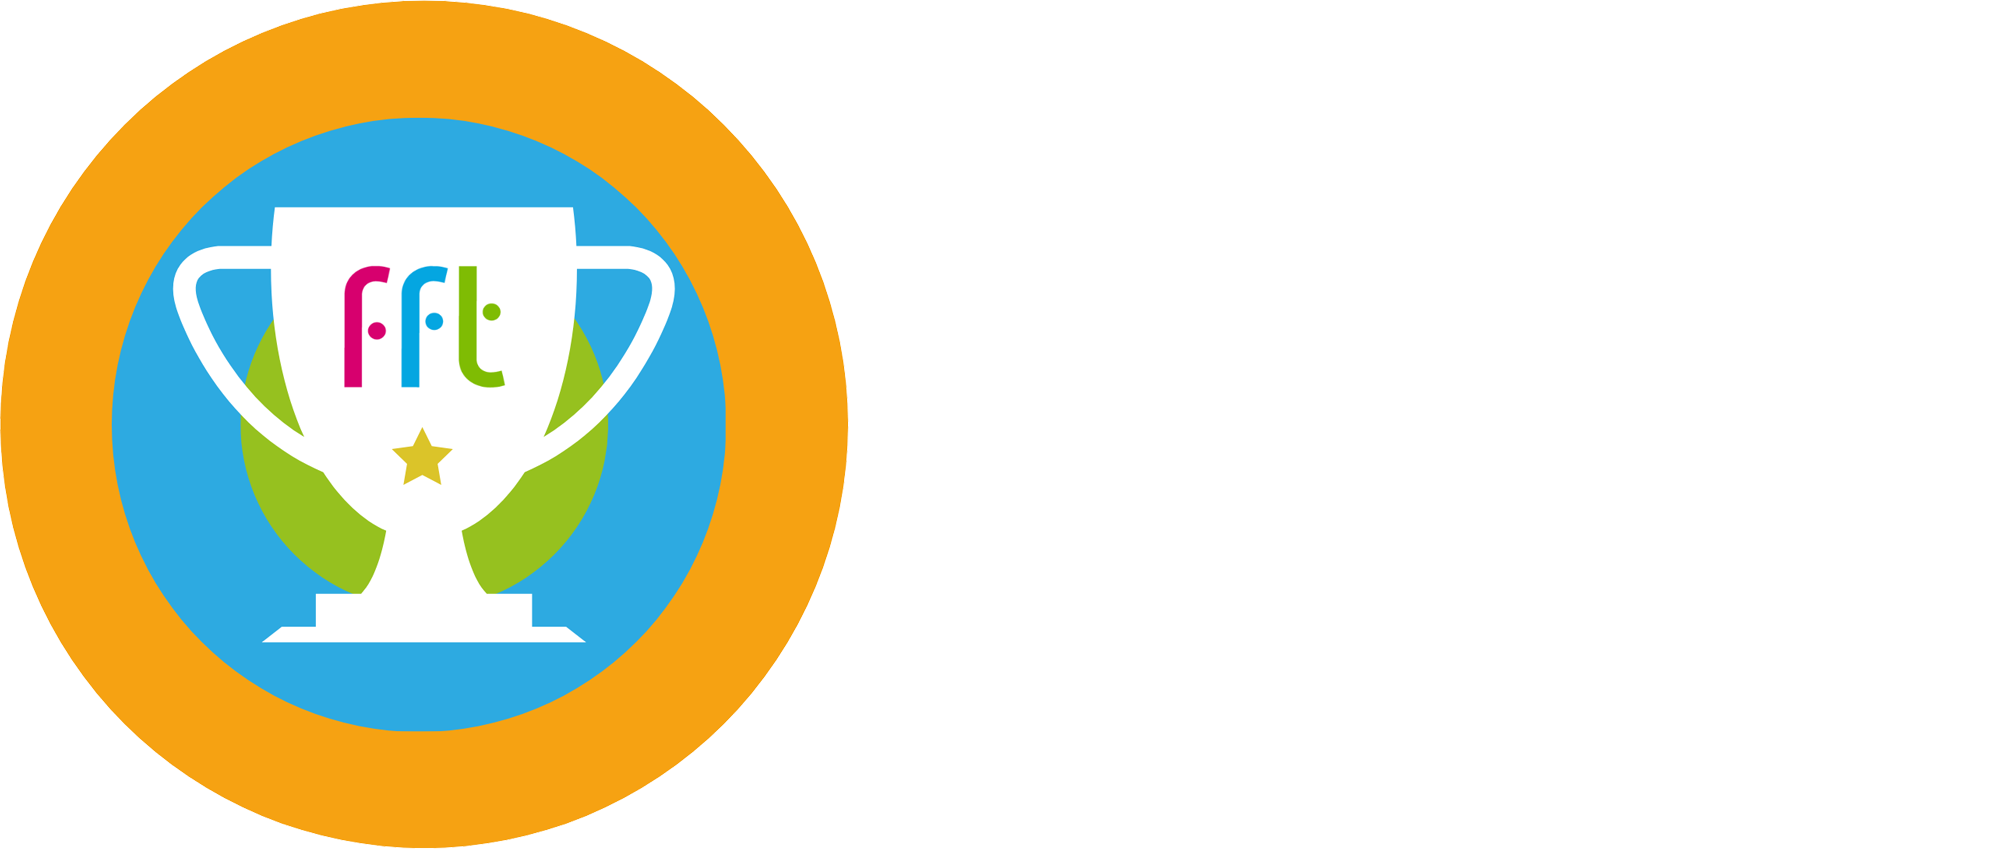 FFT Attendance Award